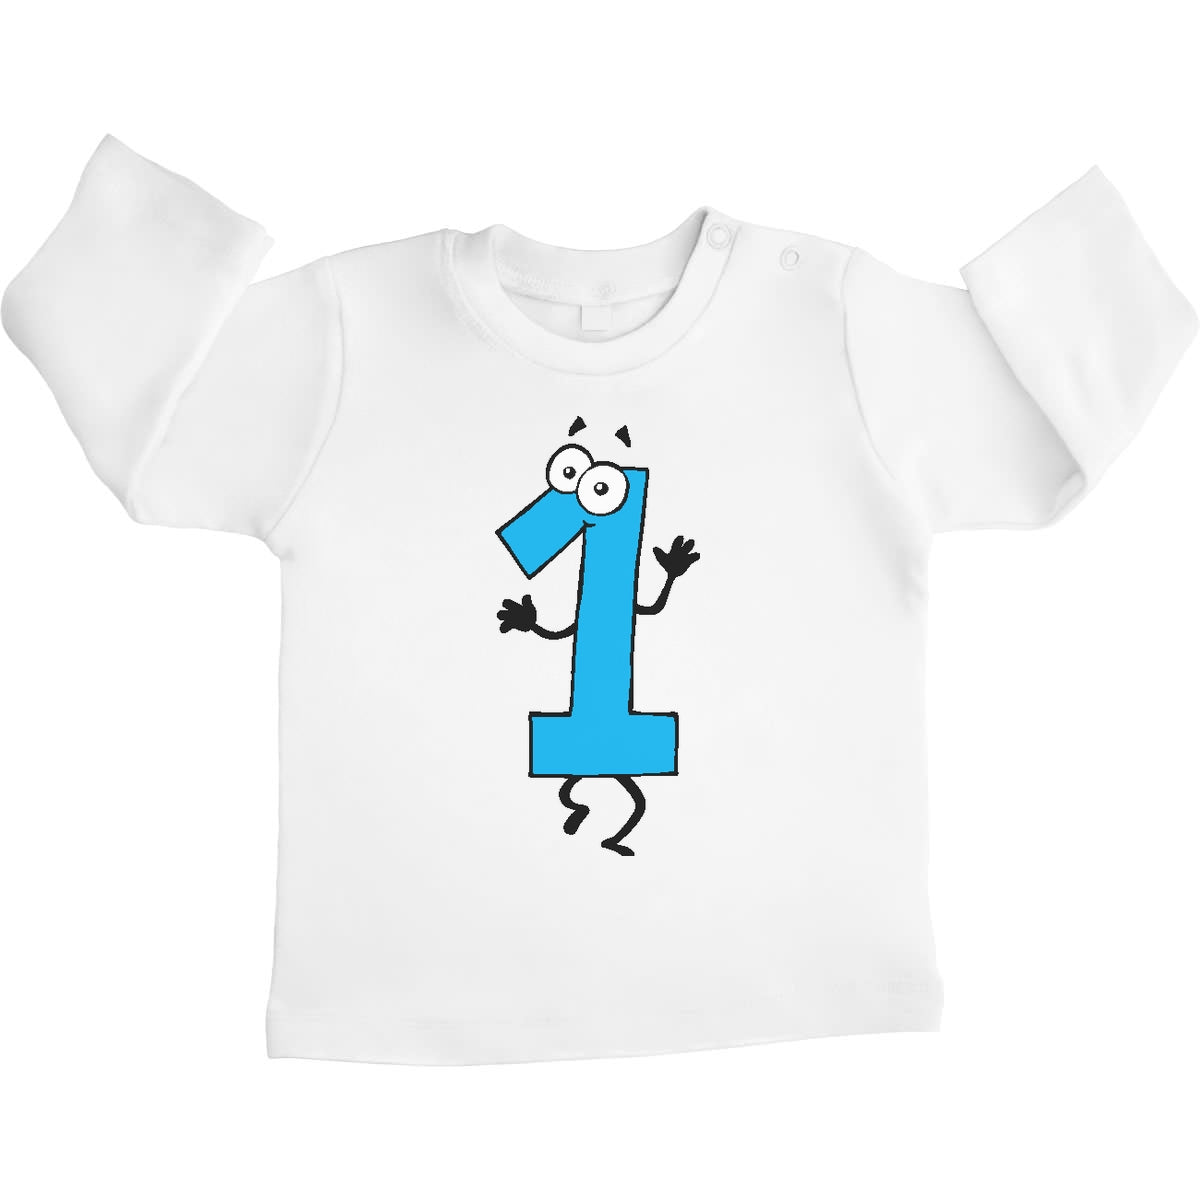 Ich Bin 1 - Süsses Geschenk zum Ersten Geburtstag Unisex Baby Langarmshirt Gr. 66-93